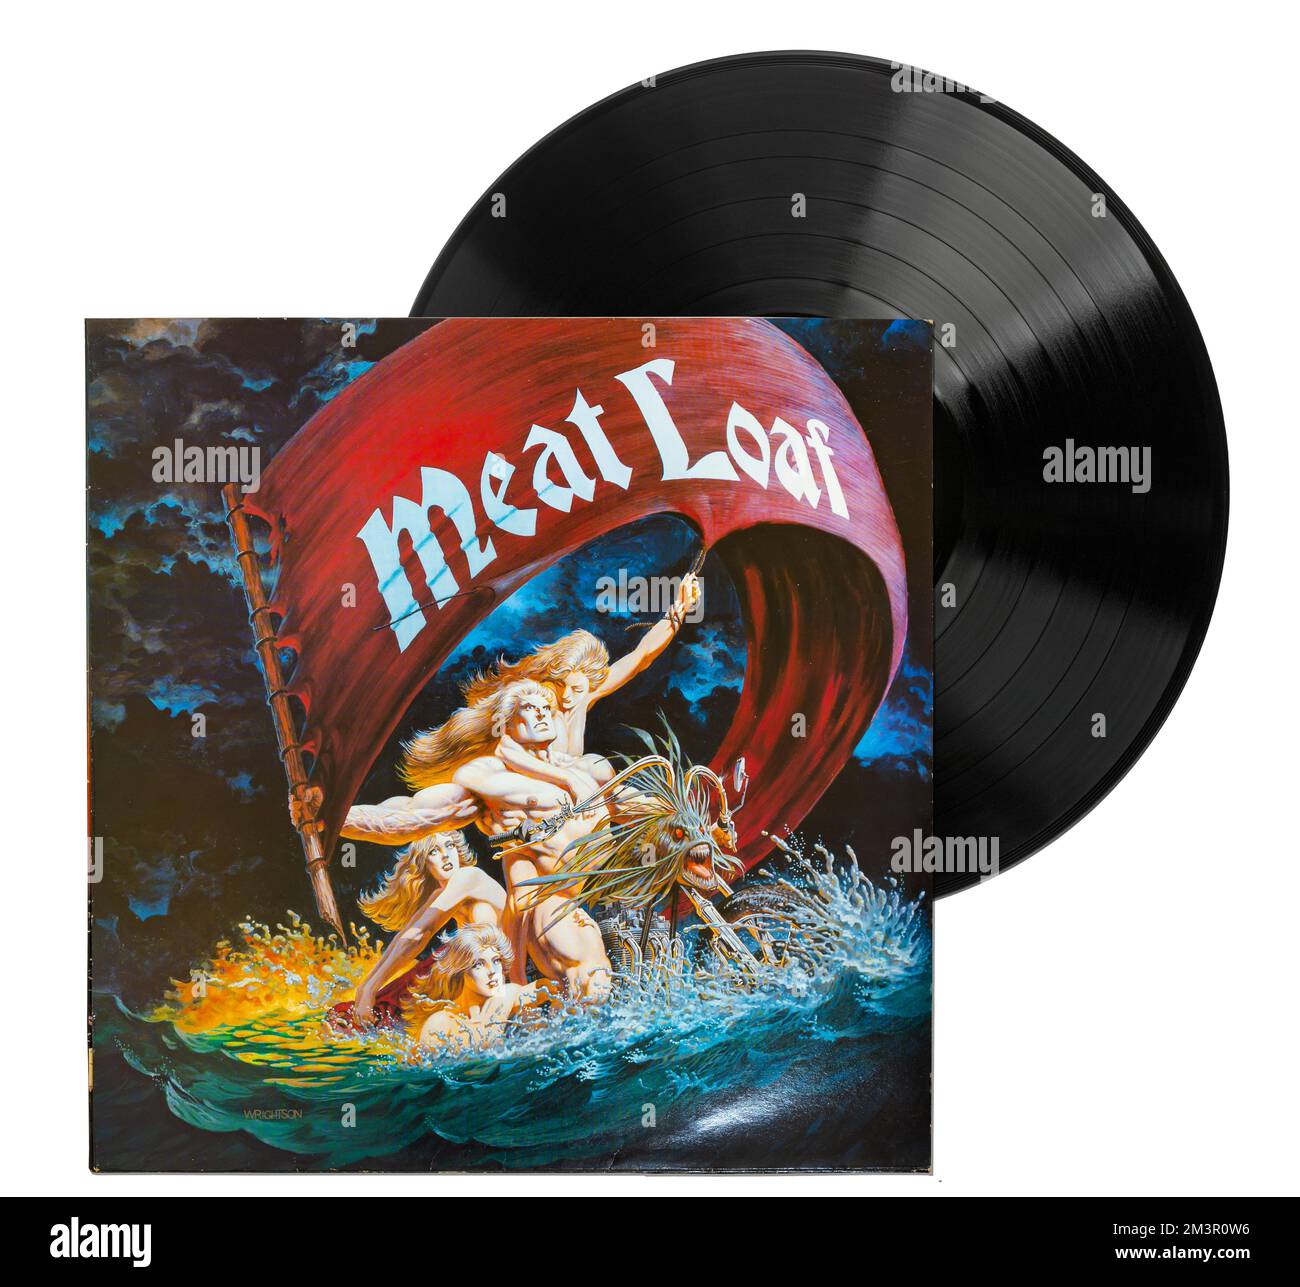 Dead Ringer ist ein Studioalbum der Hard Rock Band Meat Loaf. Michael Lee Aday, besser bekannt als Meat Loaf, ist ein amerikanischer Sänger und Schauspieler. Stockfoto